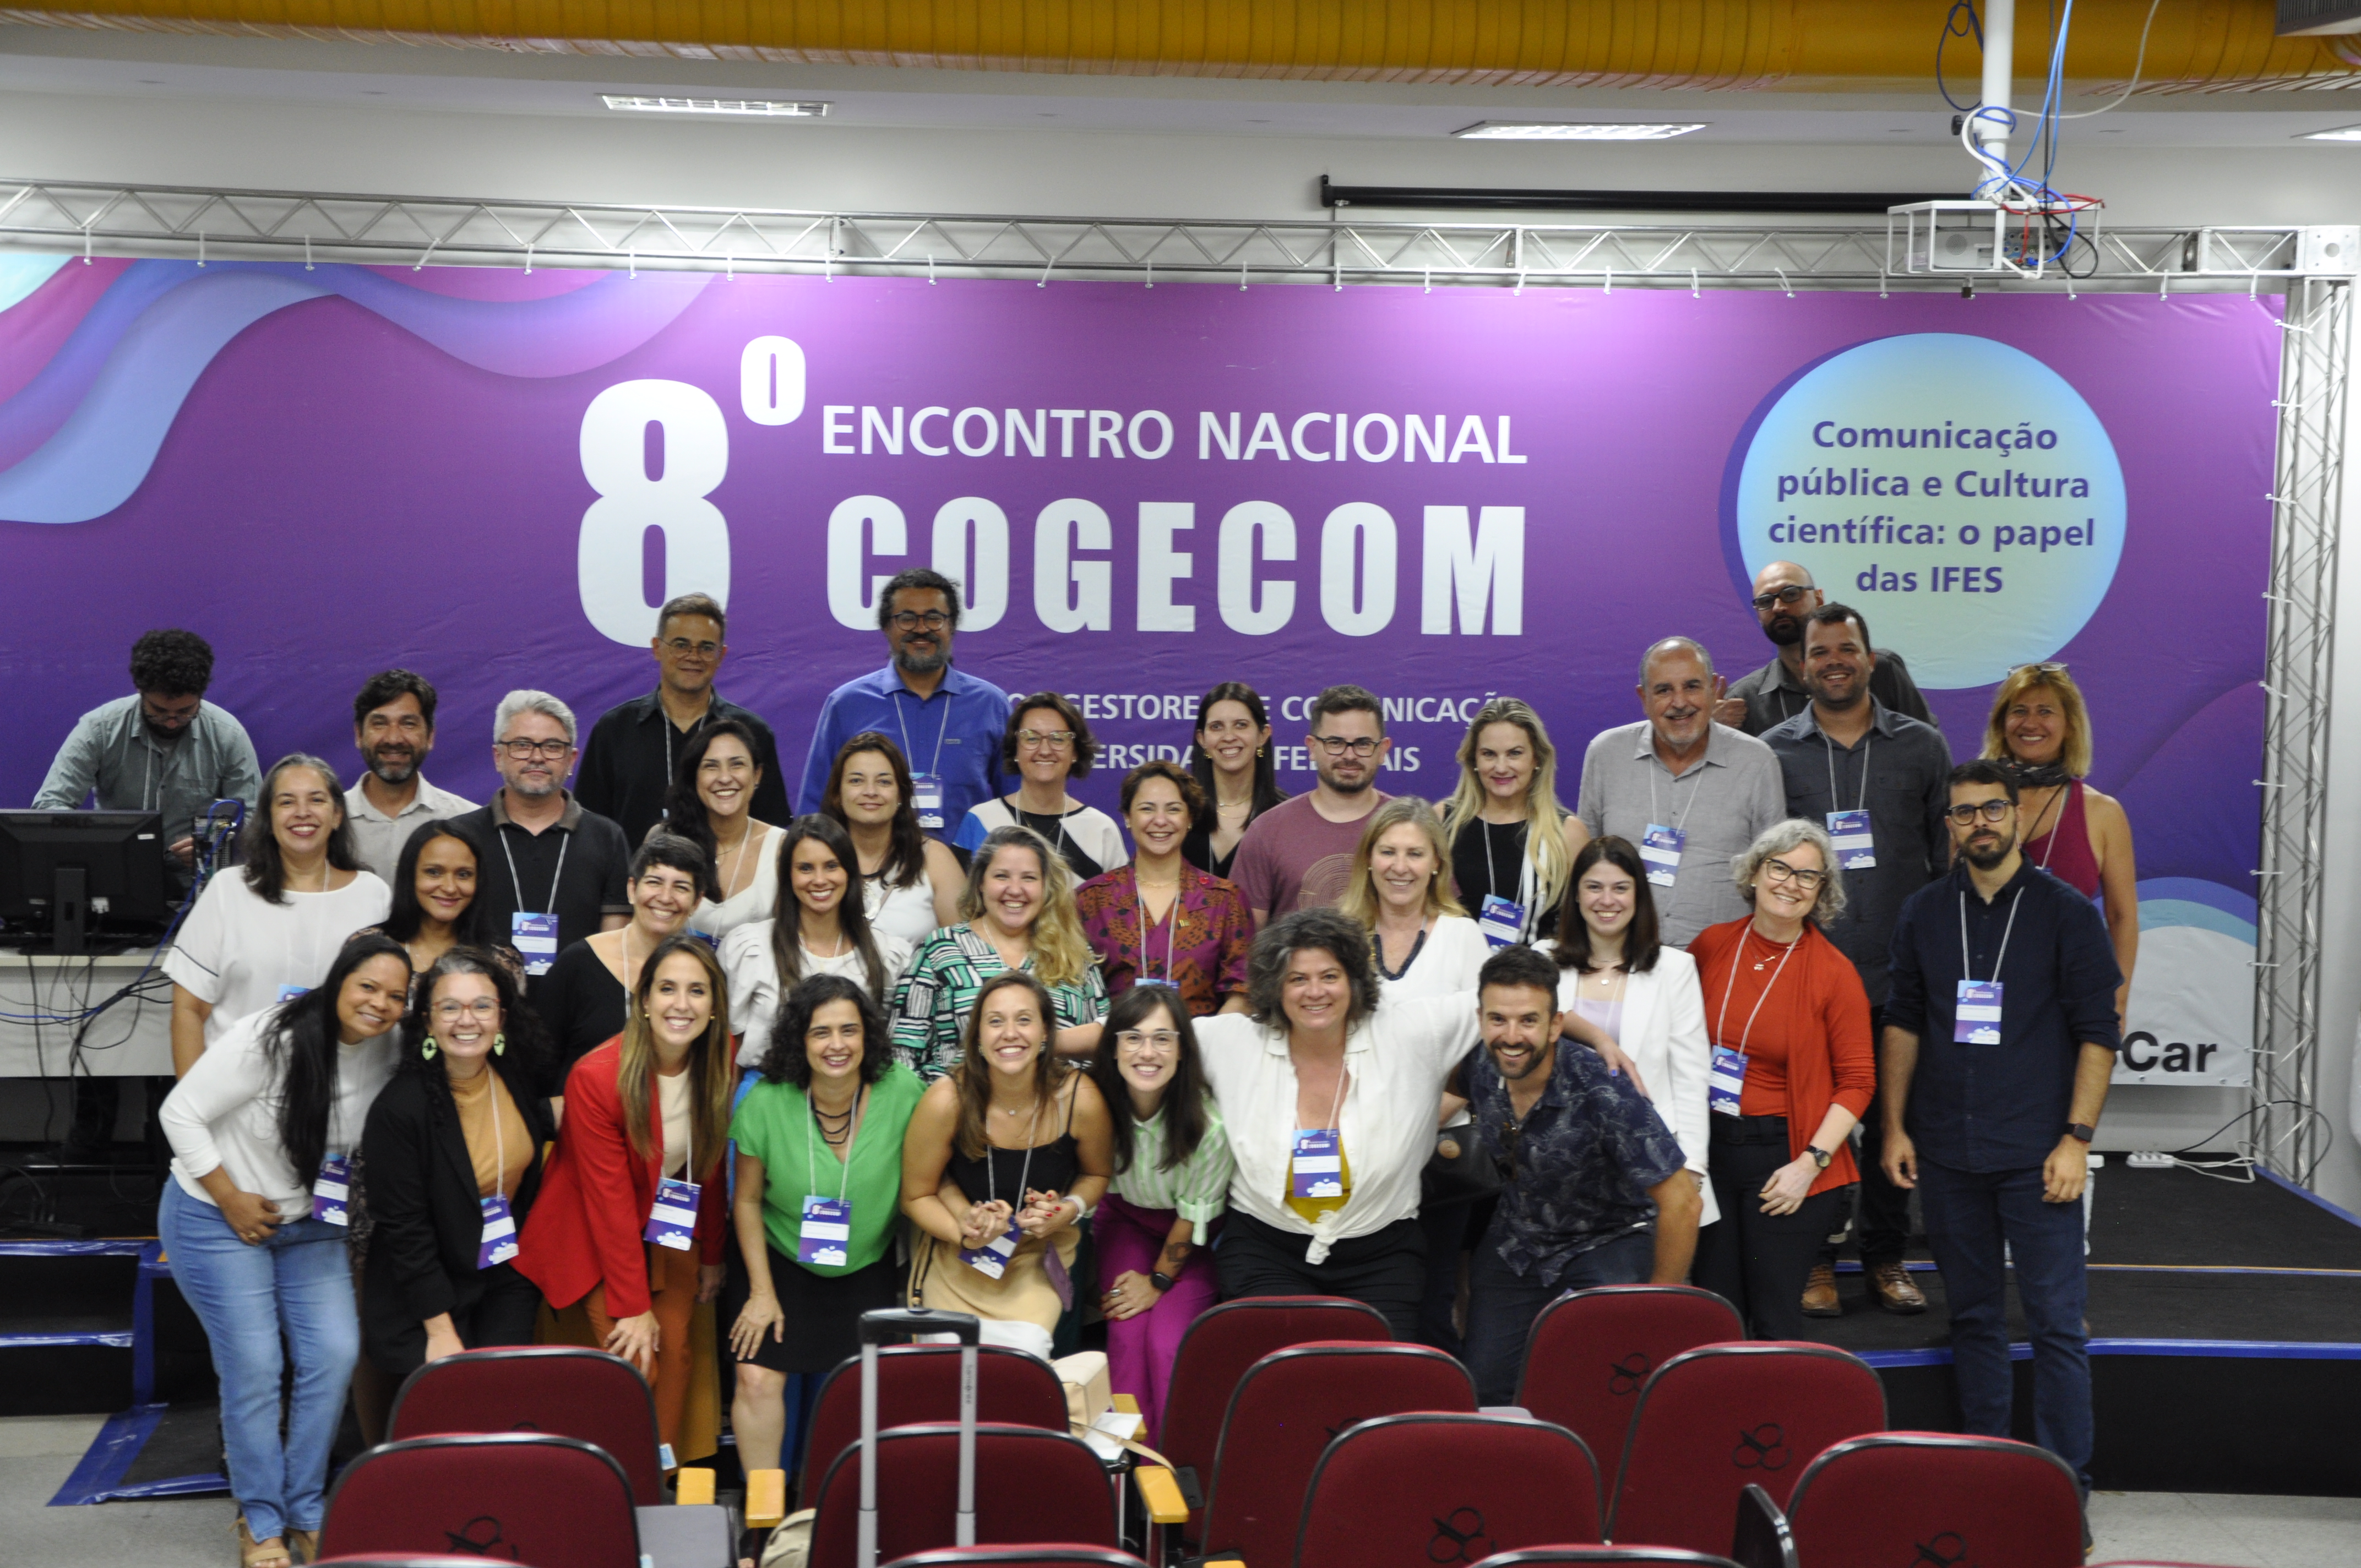 Cogecom Participantes